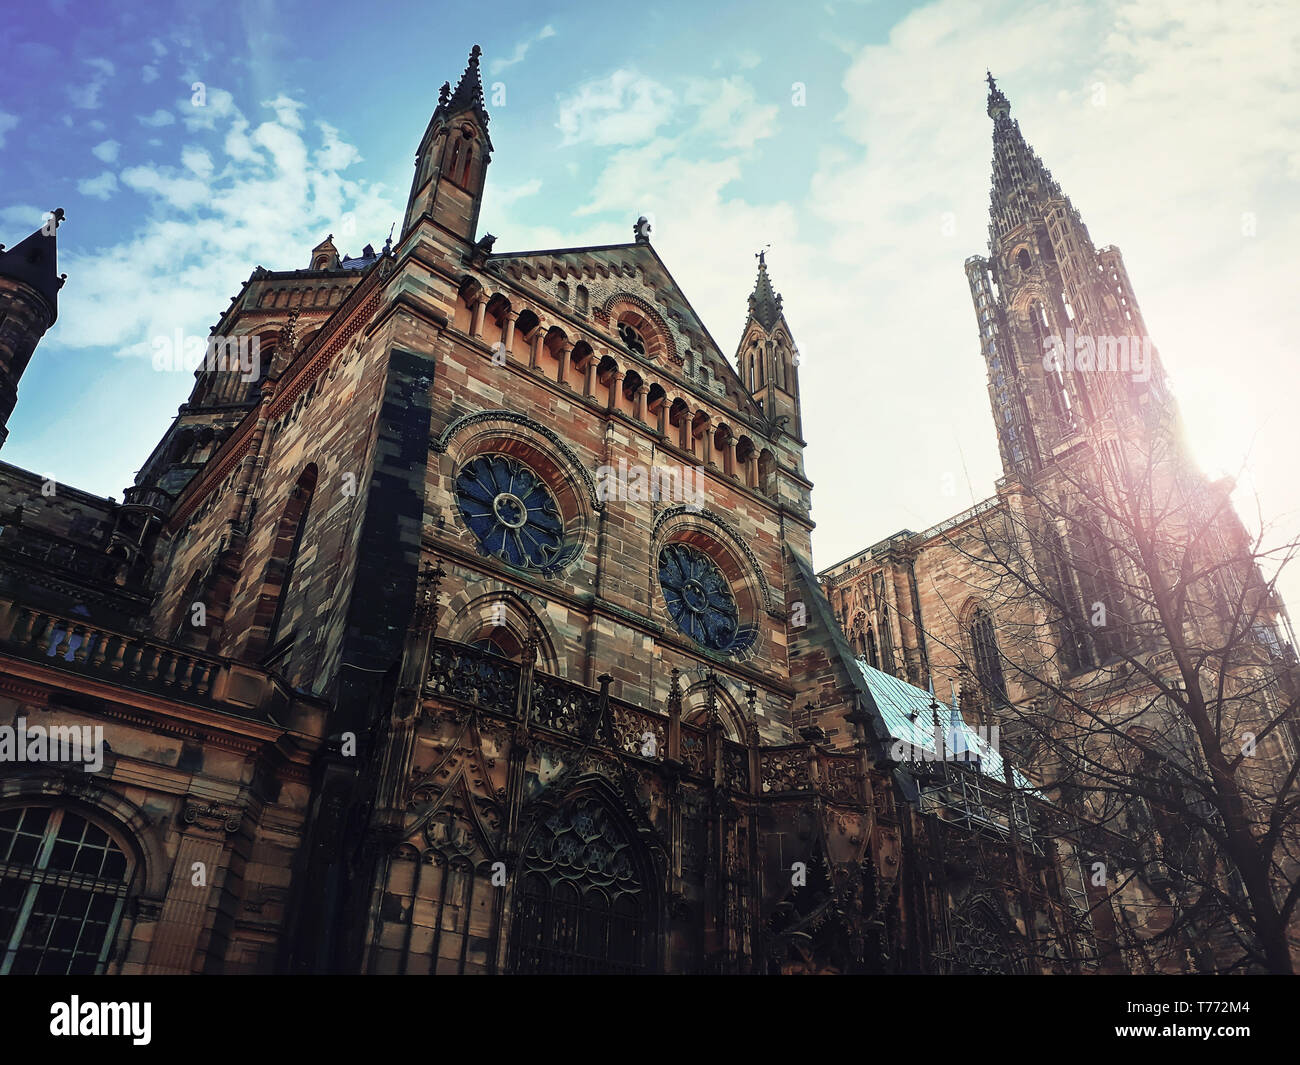 Seitenansicht des Römisch-katholischen Kathedrale Notre Dame von Straßburg im Elsass, Frankreich. Schönen sonnigen Tag mit blauen Himmel. Majestätische gotische Architektur außend Stockfoto